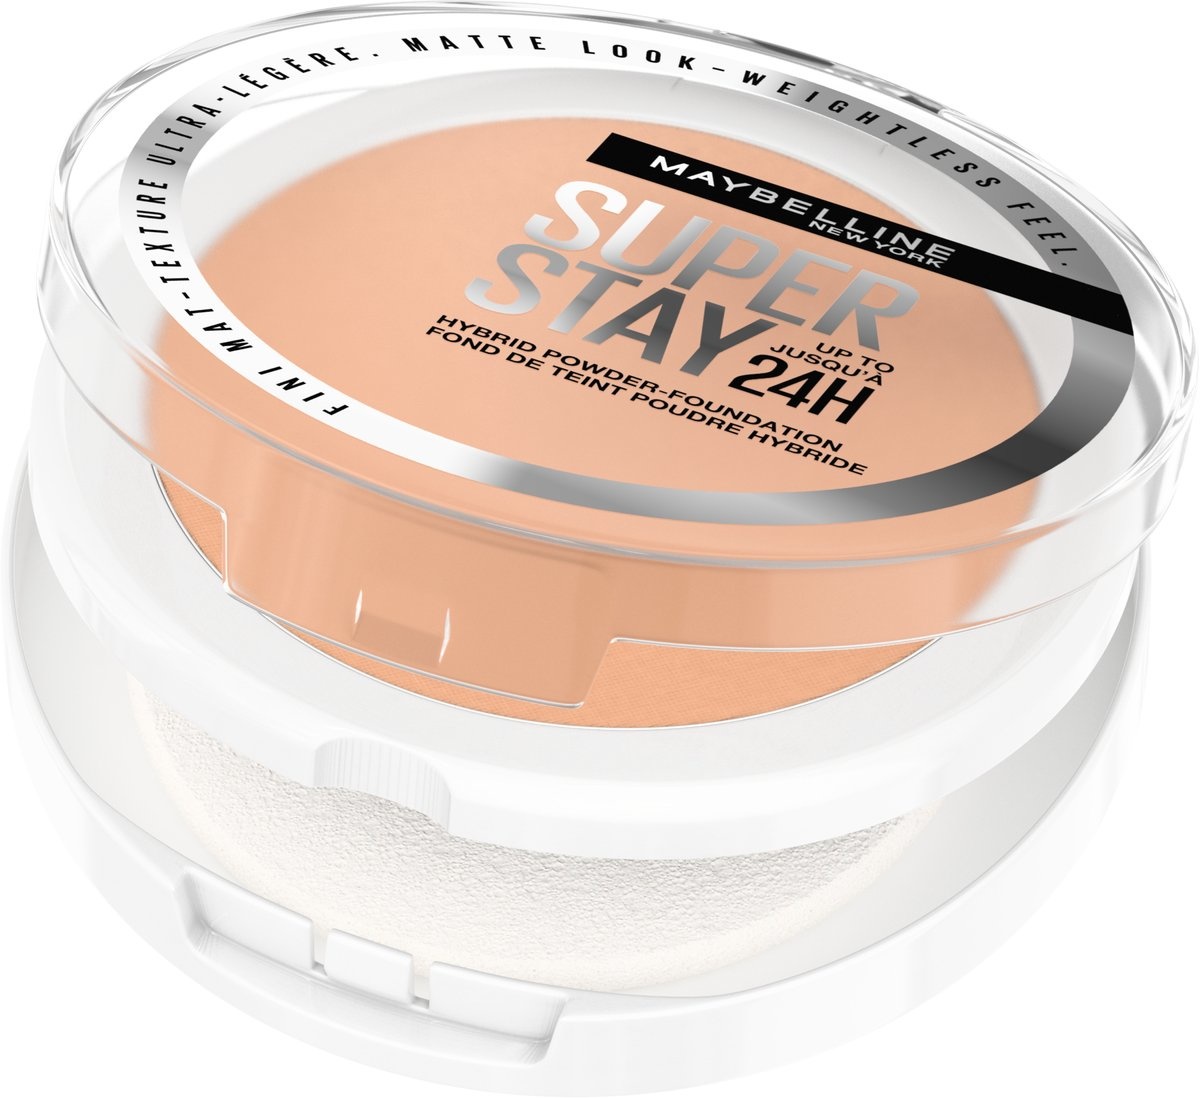 Maybelline New York - SuperStay 24H Hybrid Powder Foundation - 30